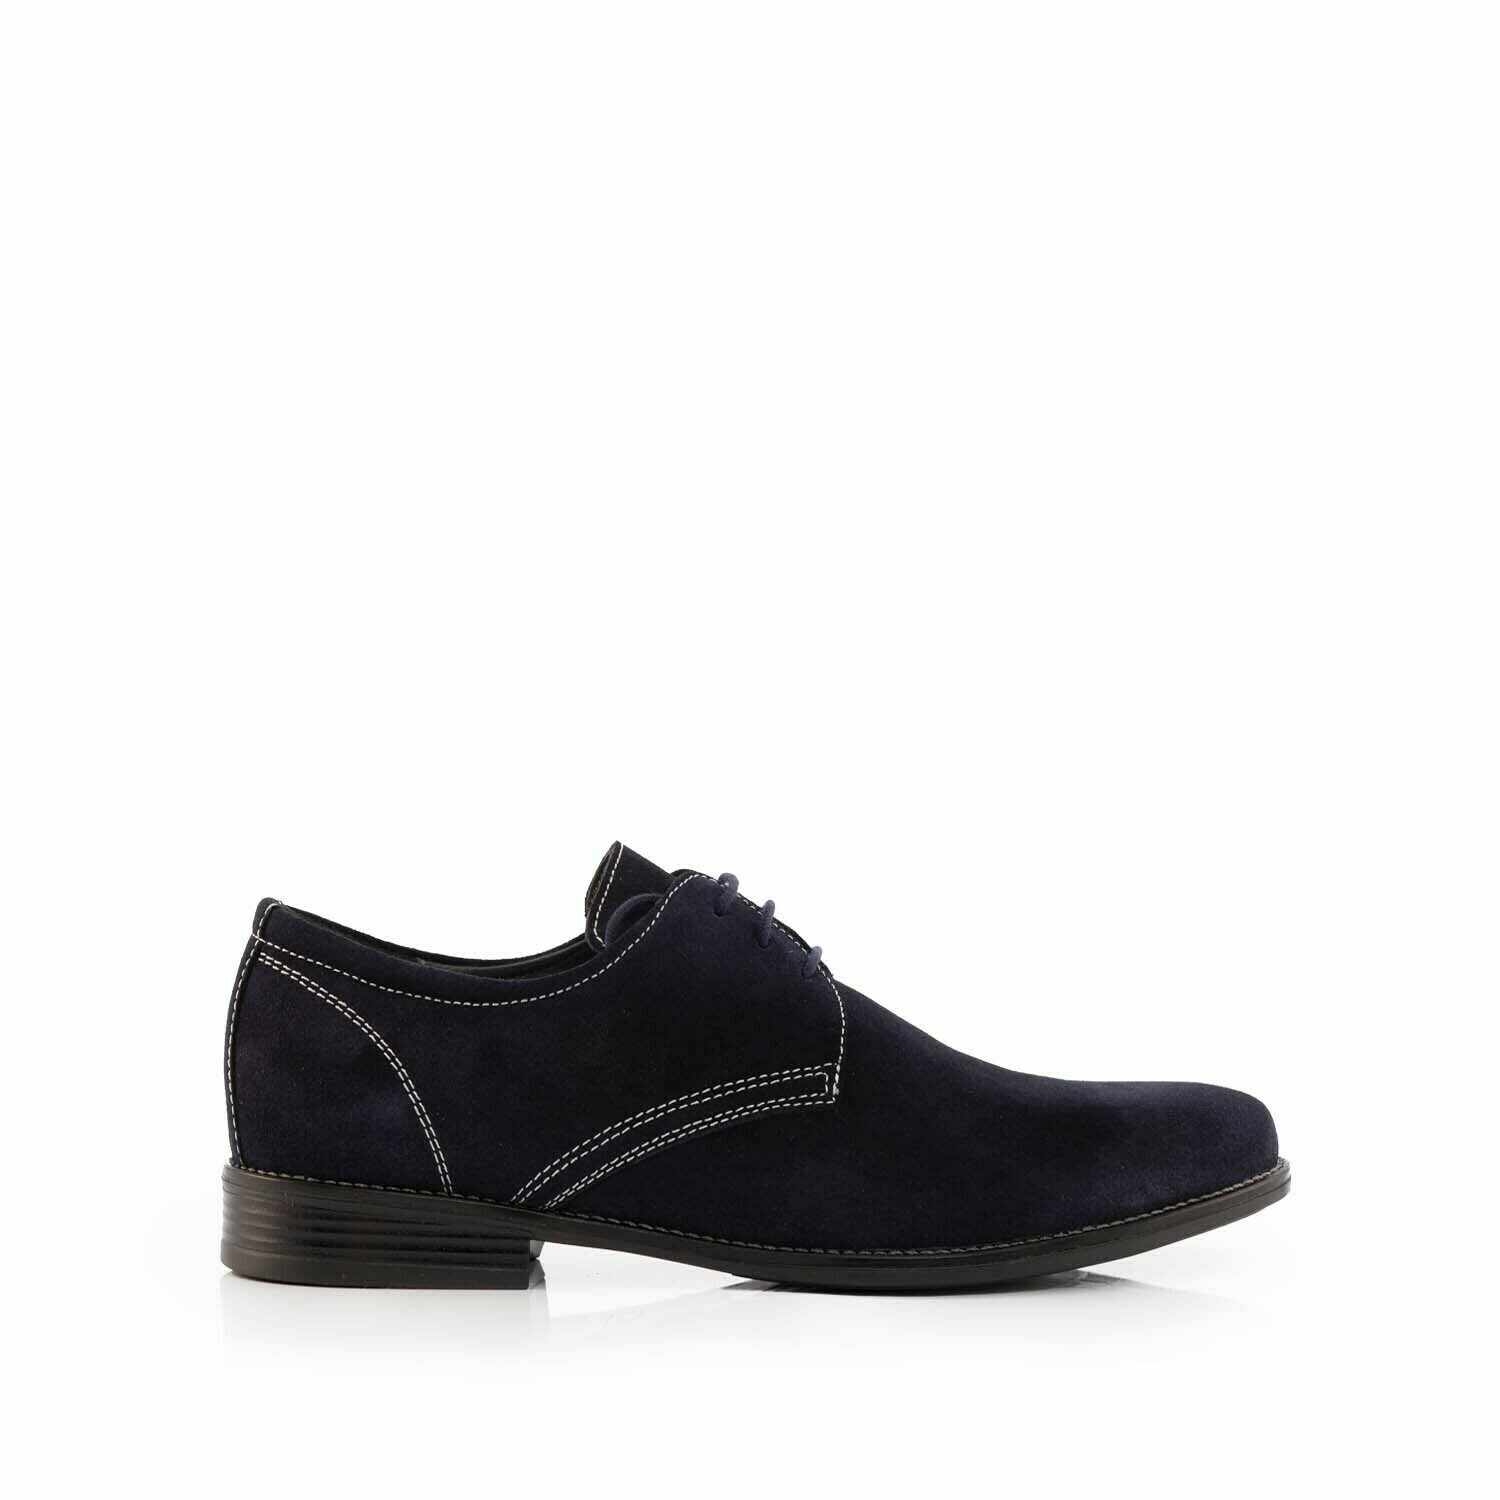 Pantofi casual bărbați din piele naturala, Leofex - 578 Blue Velur